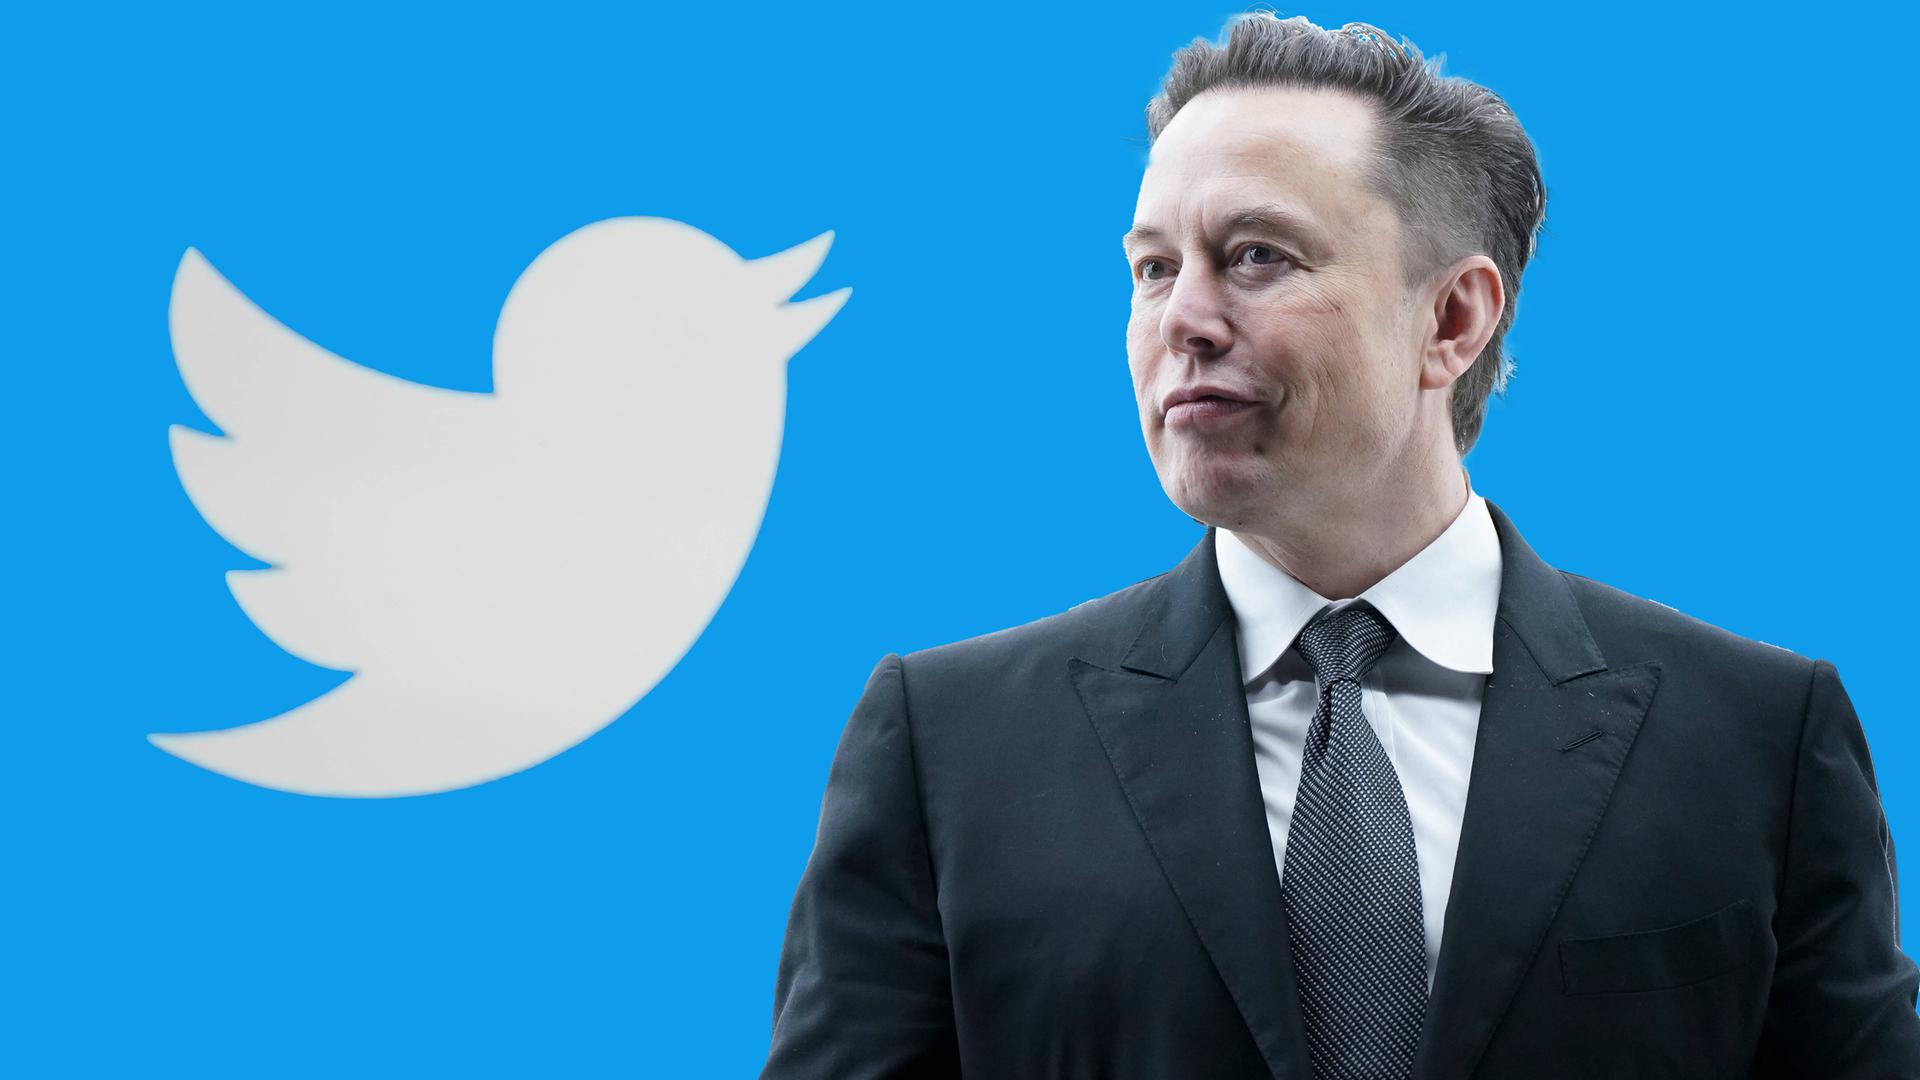 Symbolbild von Elon Musk neben dem Twitter-Spatzen 